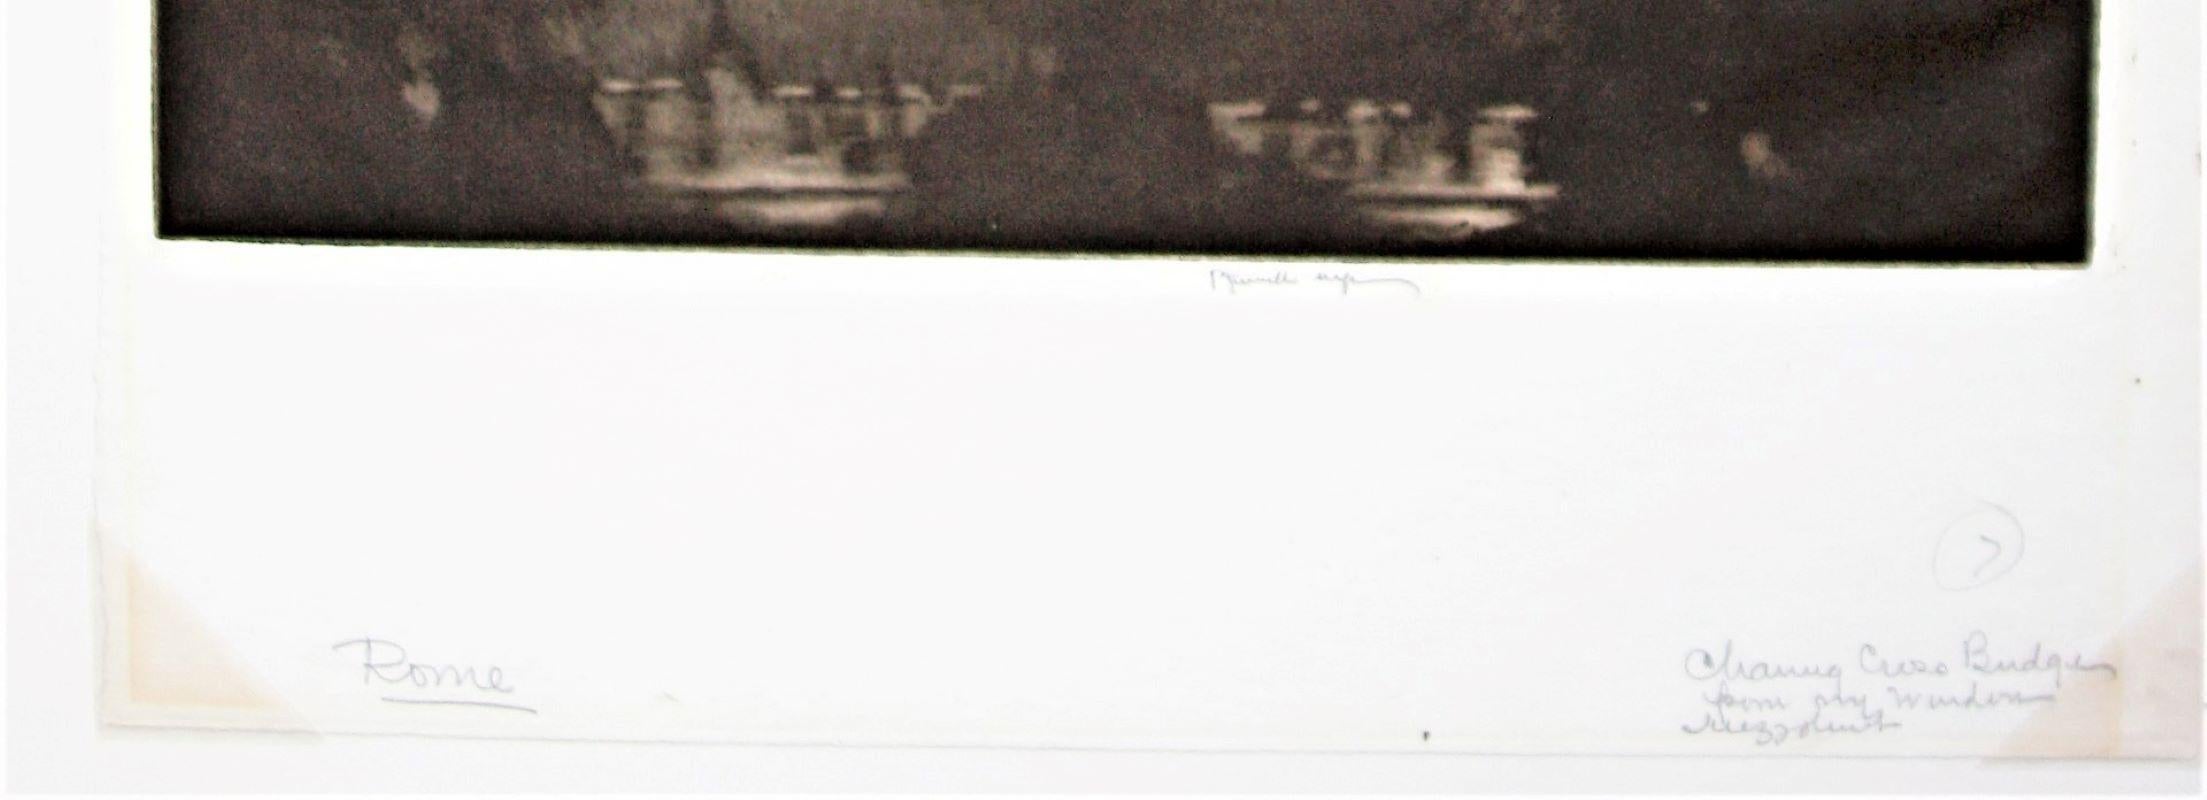 Charing Cross bei Nacht. 1909. Mezzotinto. Würth 510. 11 7/8 x 10 (Blatt 15 x 10 3/4). Auflage wahrscheinlich 30. Gedruckt auf cremefarbenem Büttenpapier, wahrscheinlich von einem antiken Band. Rom